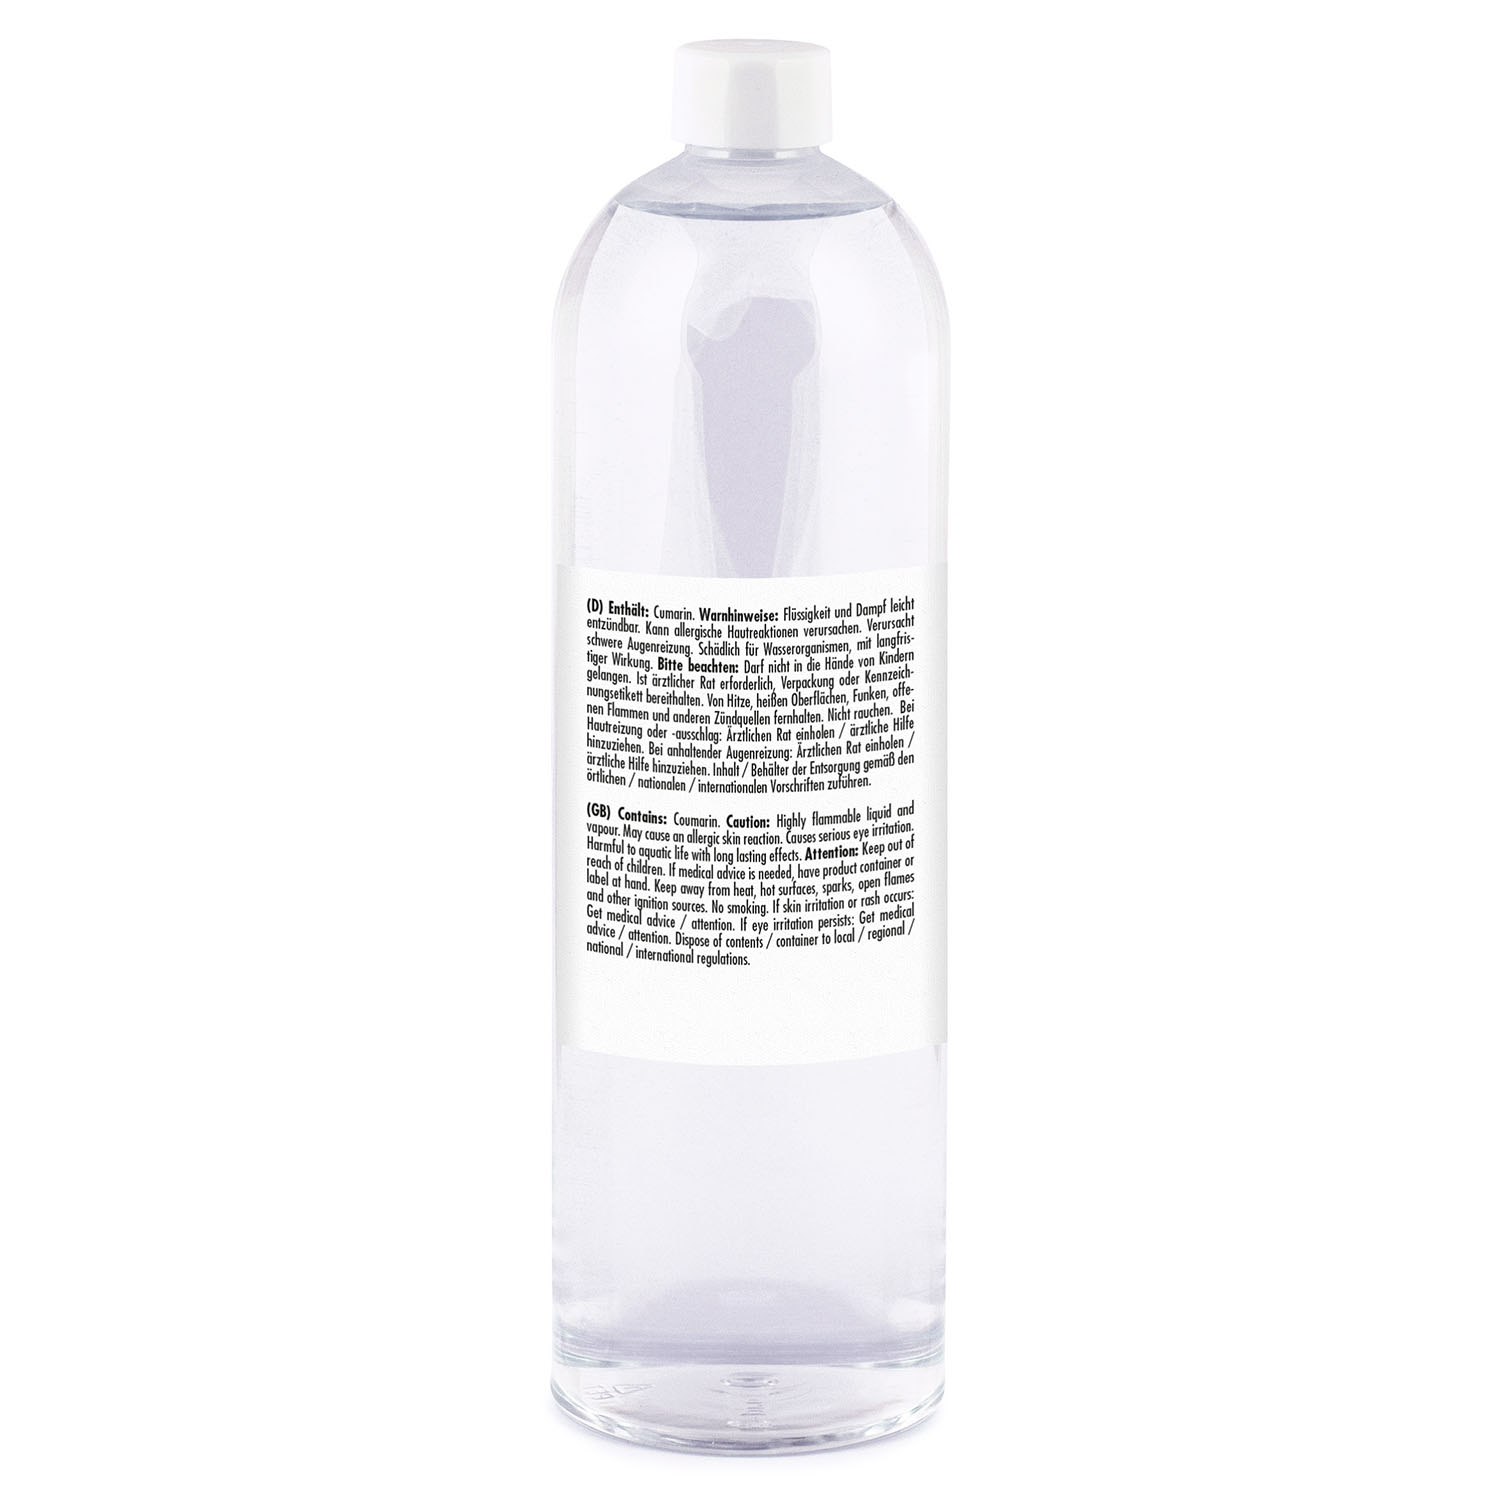 Raumduft Nachfüllflasche Vanille 1000ml- Raum düfte - Parfümhersteller